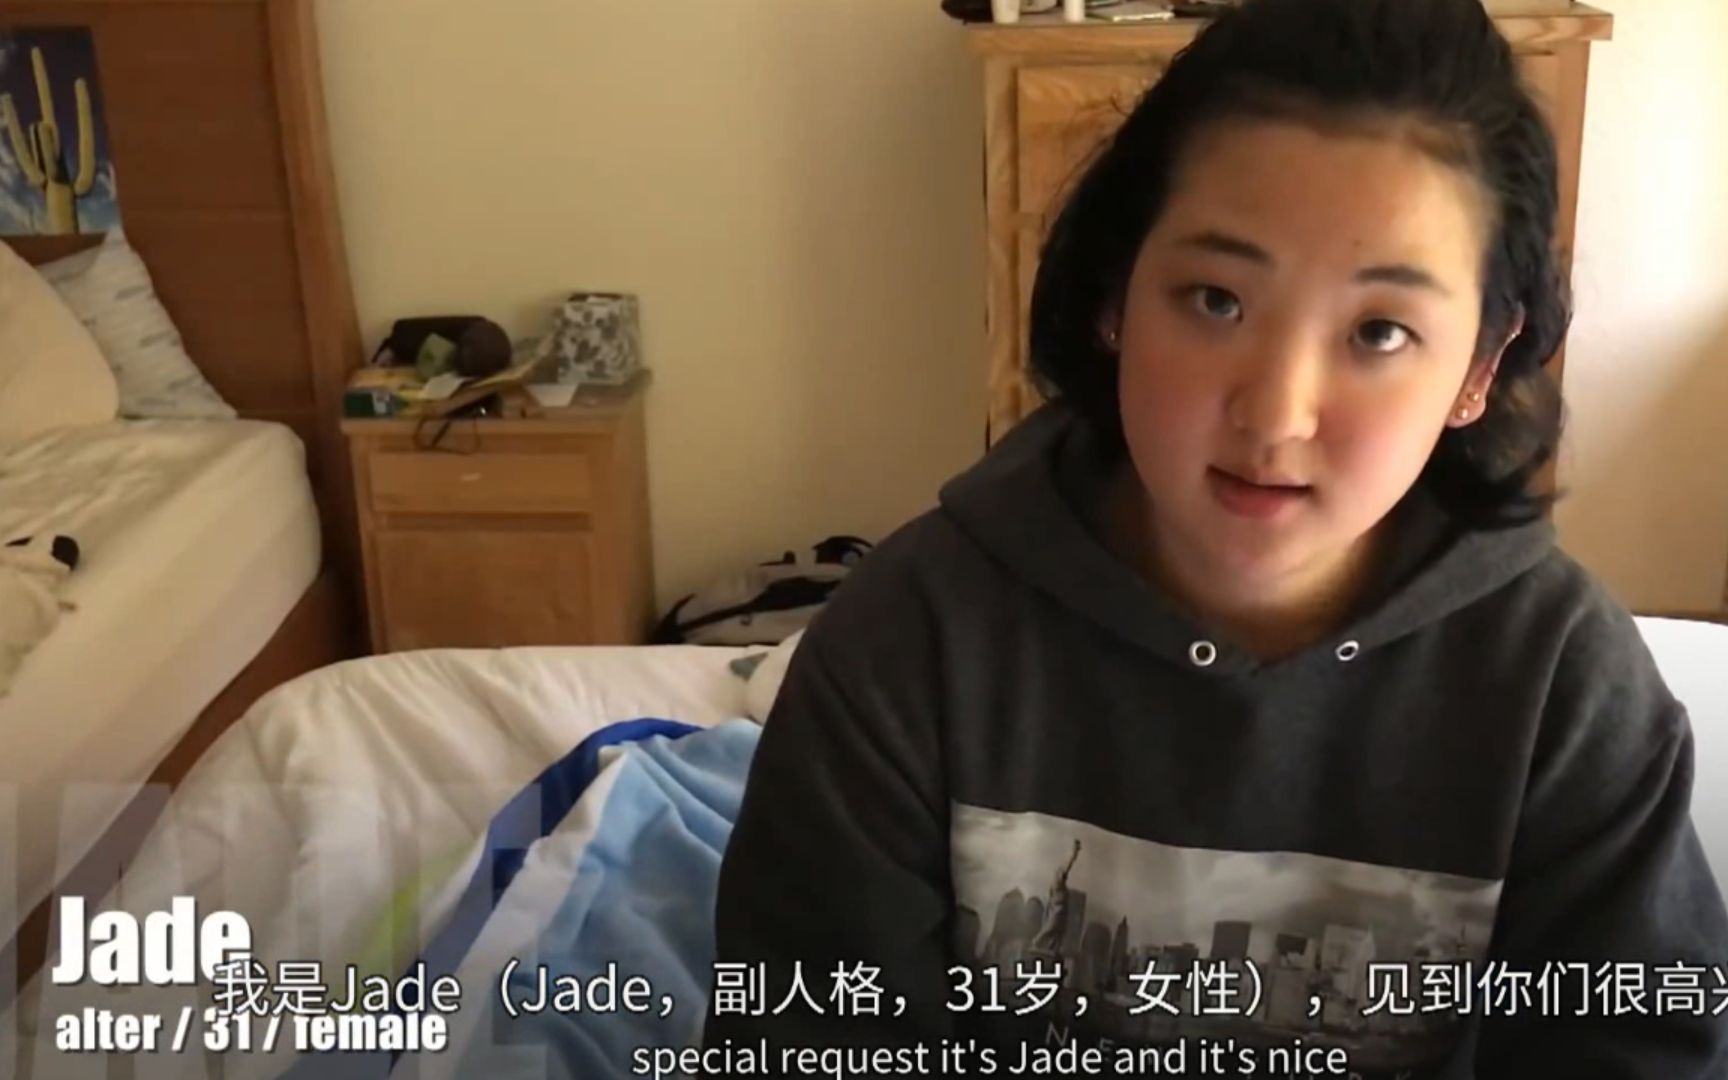 19 岁多重人格患者 Jess转换出 31 岁母亲人格回答网友的提问（副人格 Jade 解答网友问题）（part2）（中英字幕）AlexMax Han